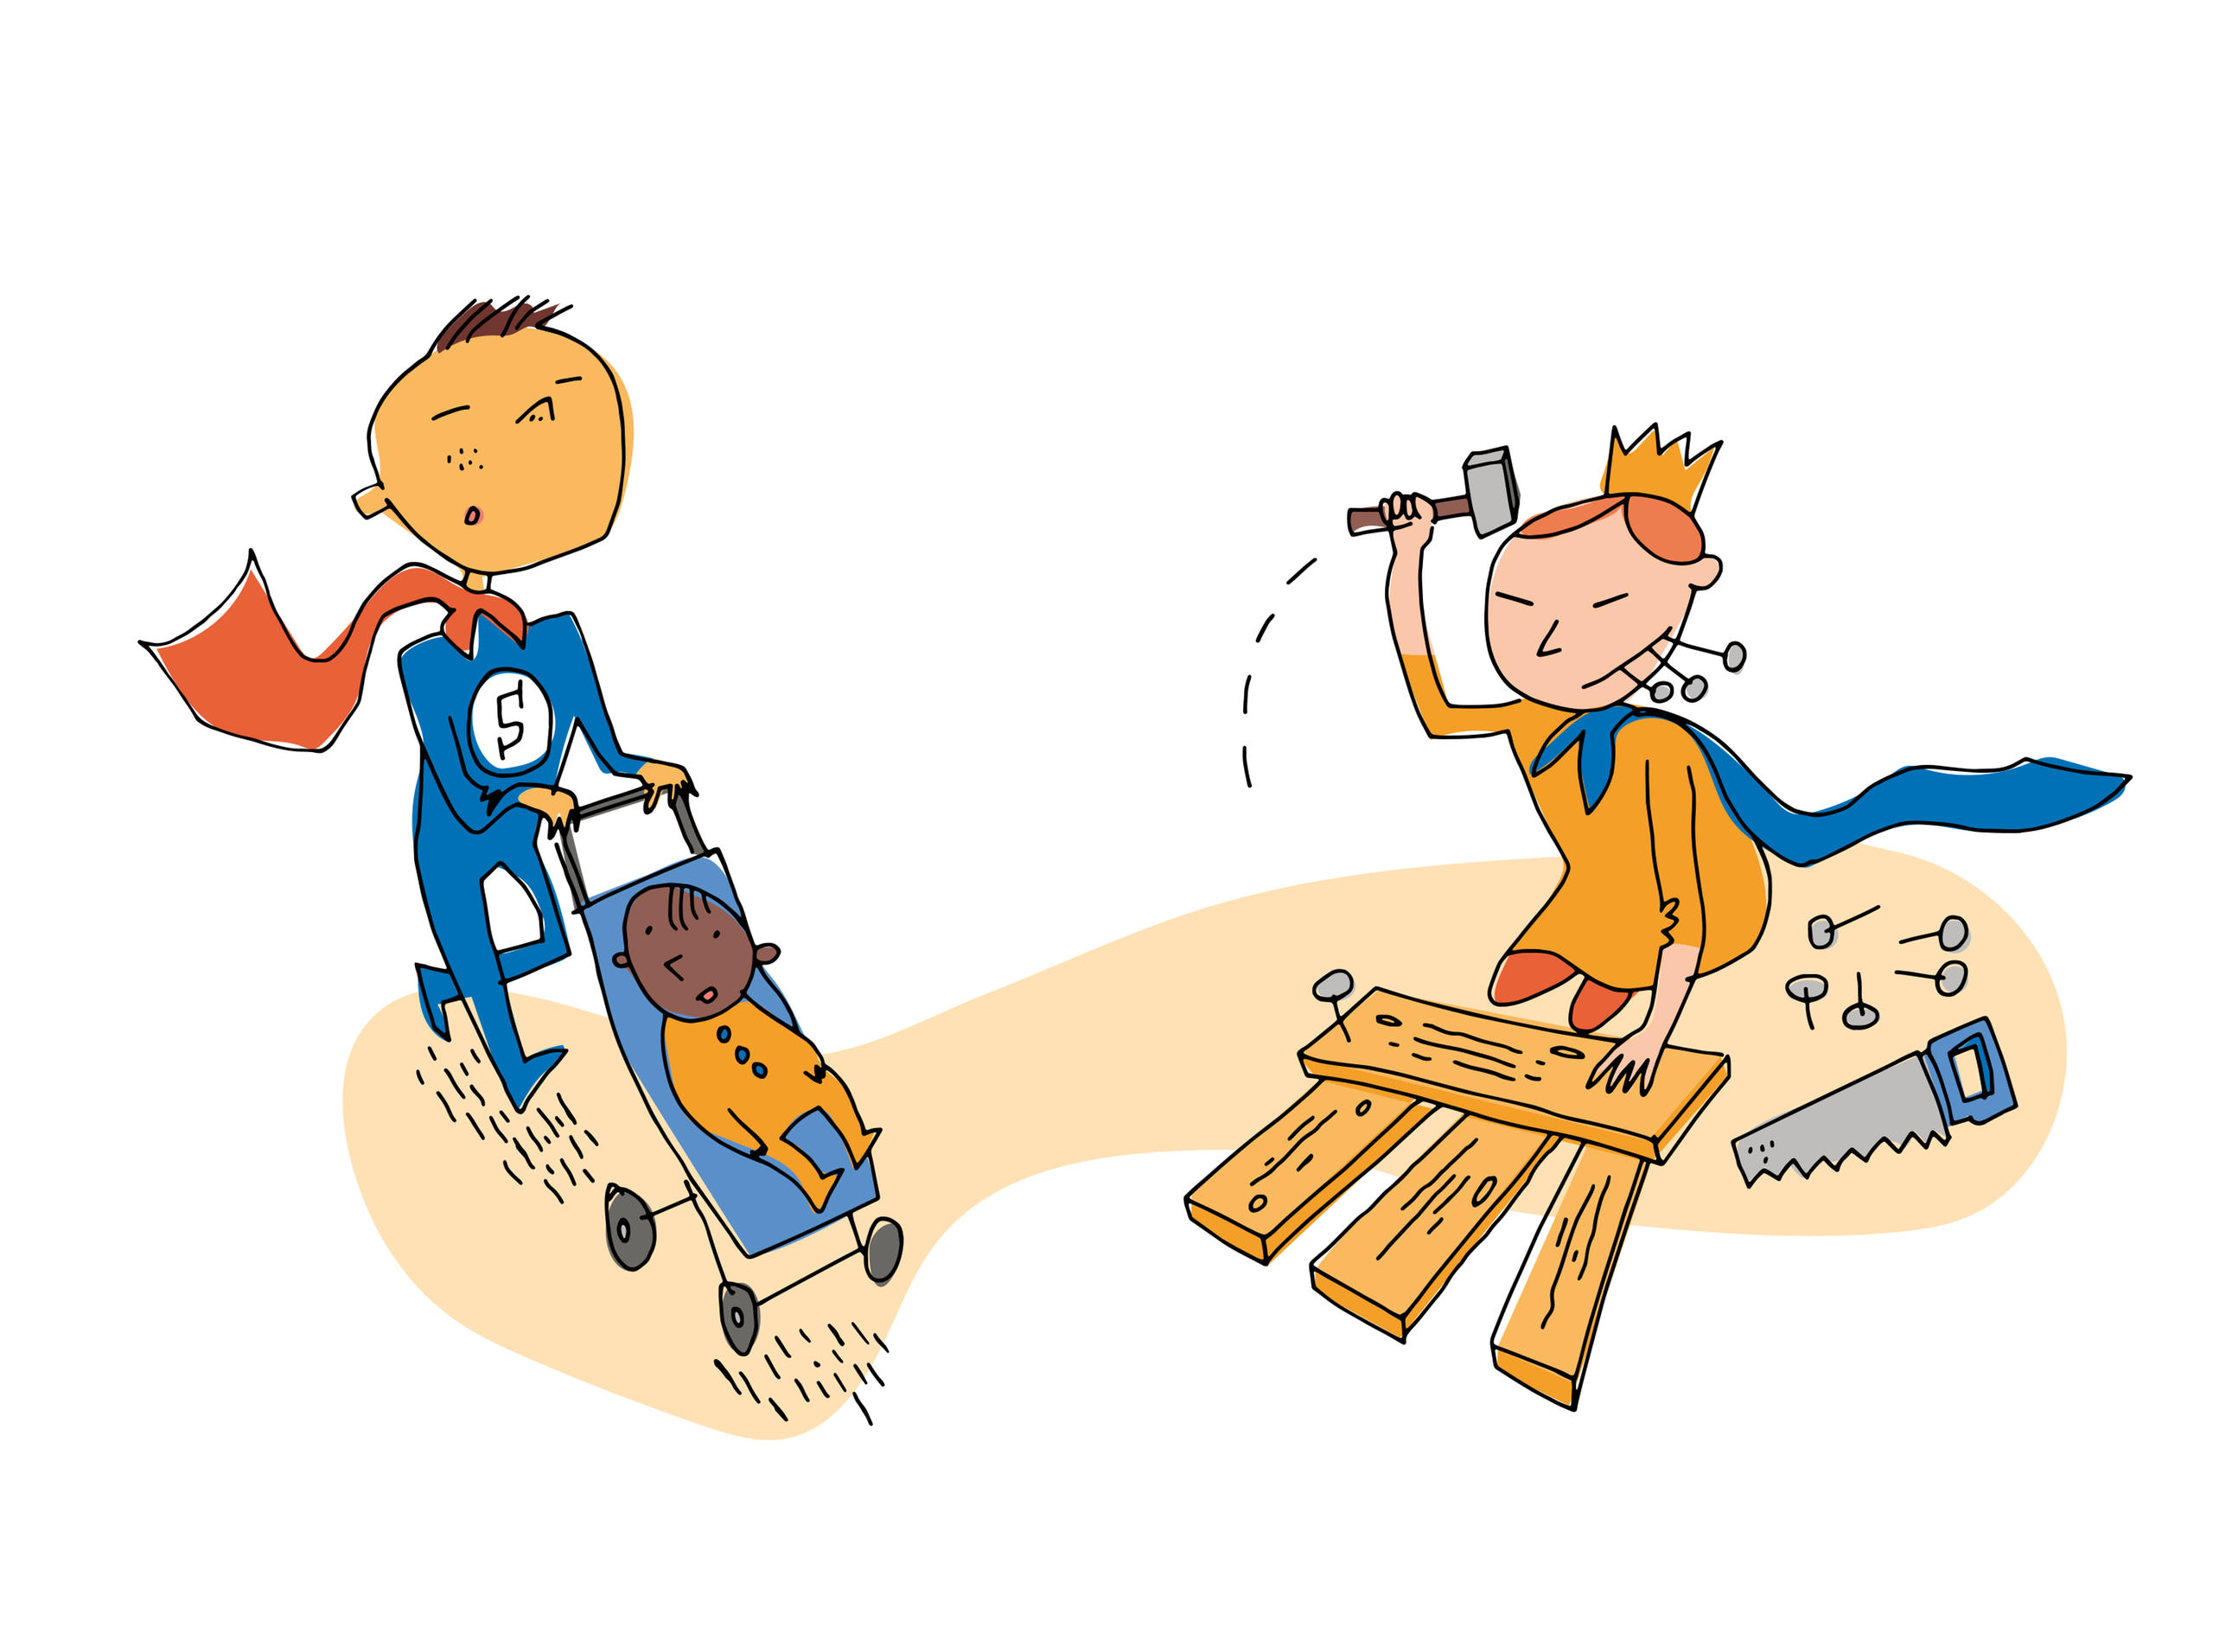 (fumetto) ragazzo vestito da Superman spinge un passeggino e ragazza vestita da principessa costruisce qualcosa col legno